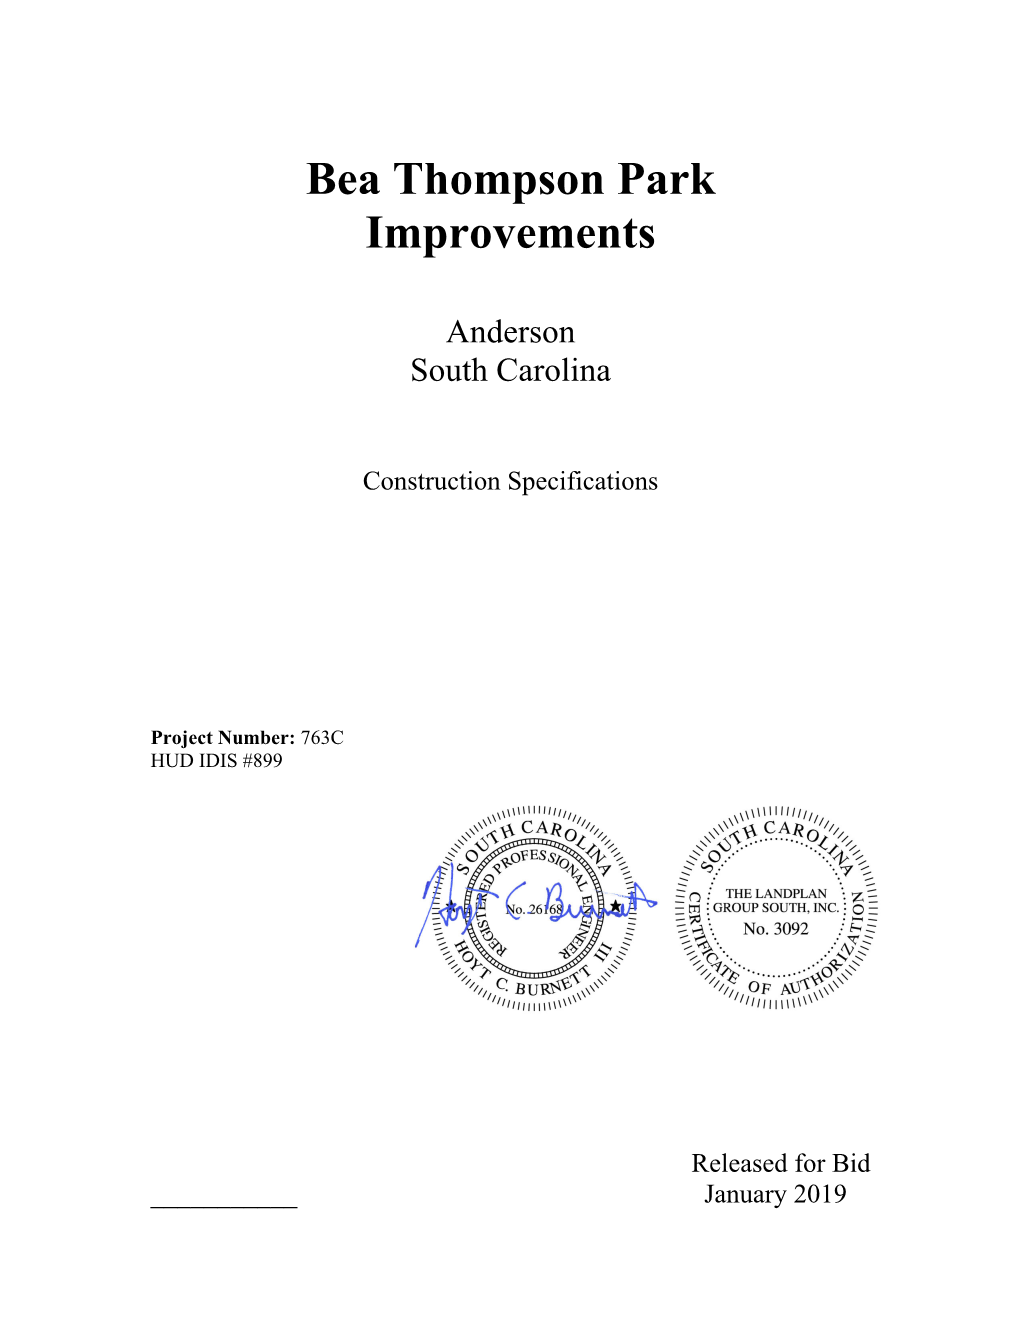 Bea Thompson Park Improvements